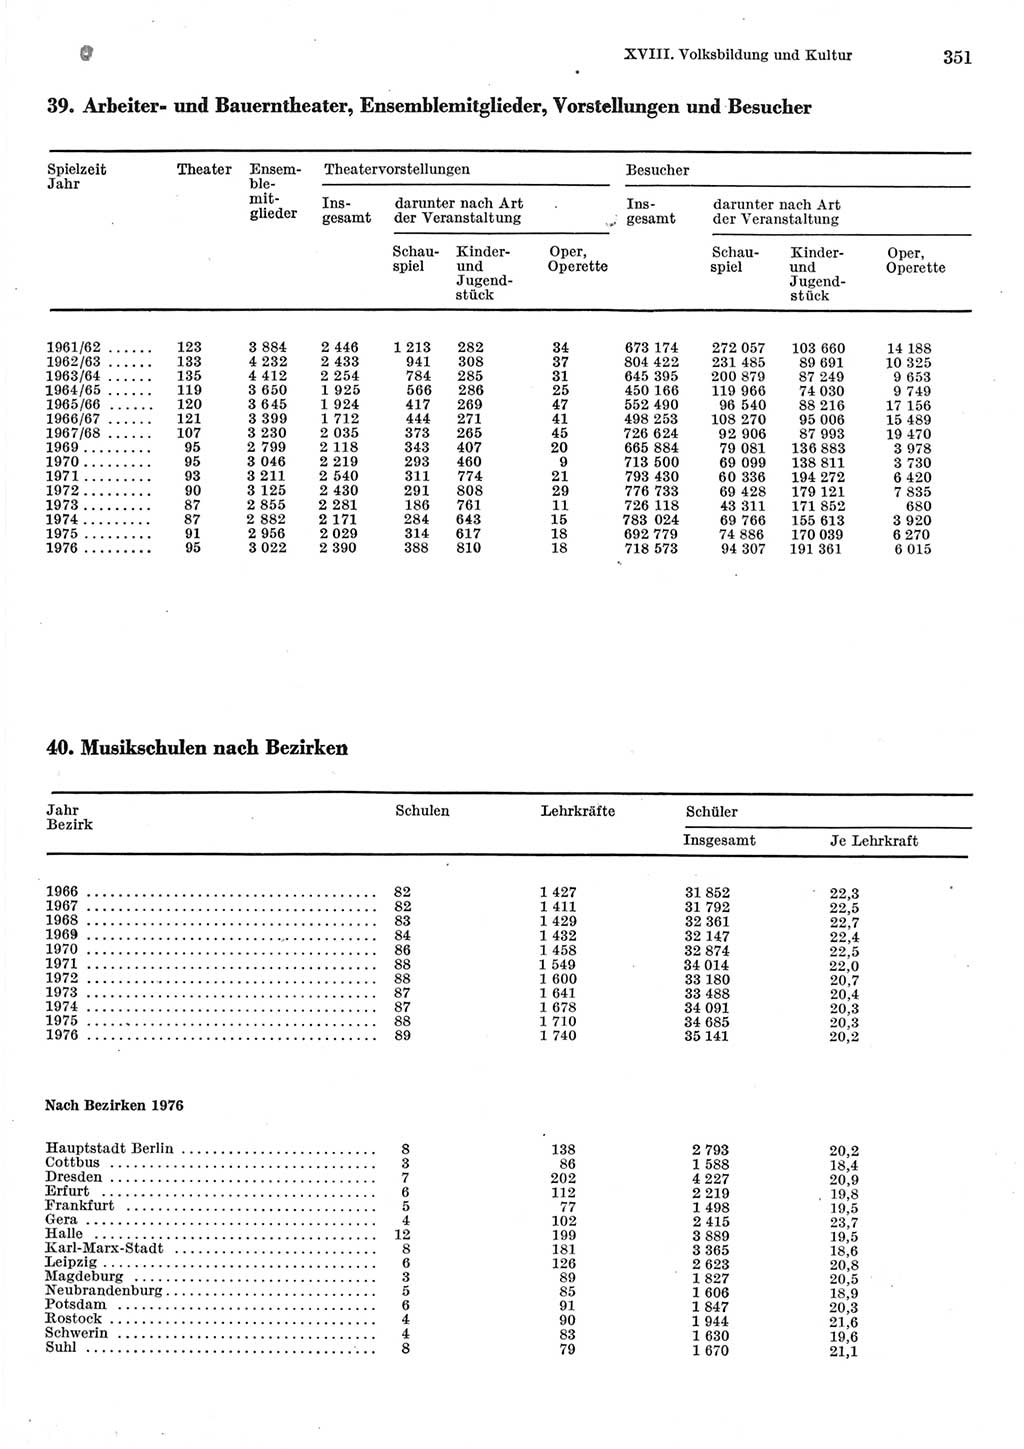 Statistisches Jahrbuch der Deutschen Demokratischen Republik (DDR) 1977, Seite 351 (Stat. Jb. DDR 1977, S. 351)